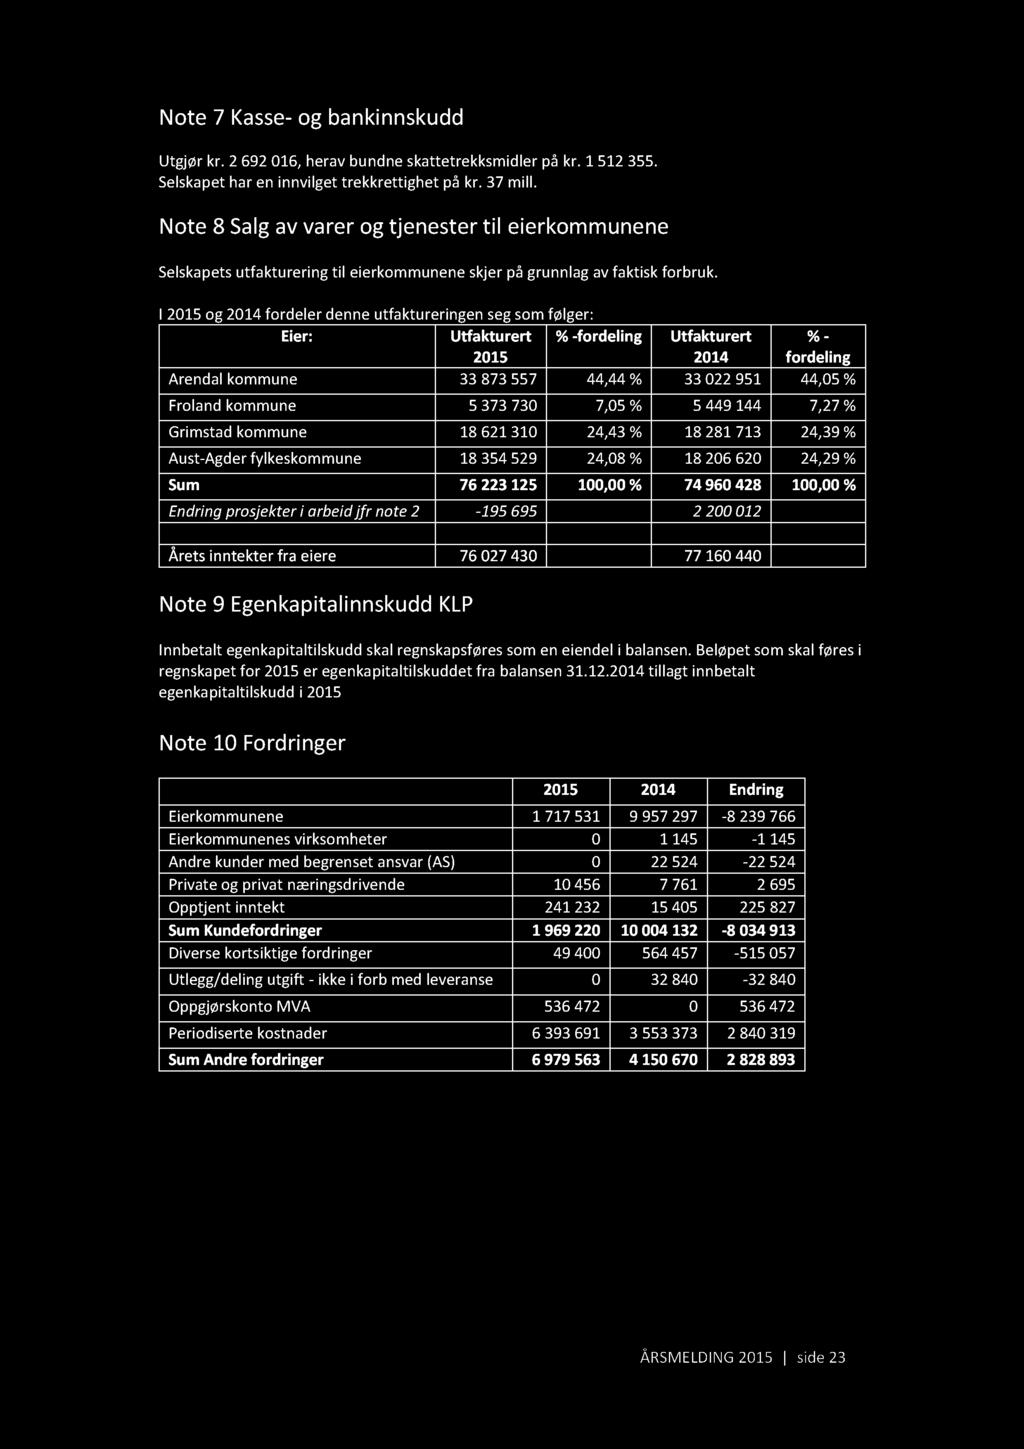 Note 7 Kasse - og bankinnskudd Utgjør kr. 2 692016, herav bundne skattetrekksmidler på kr. 1 512355. Selskapet har en innvilget trekkrettighet på kr. 37 mill.